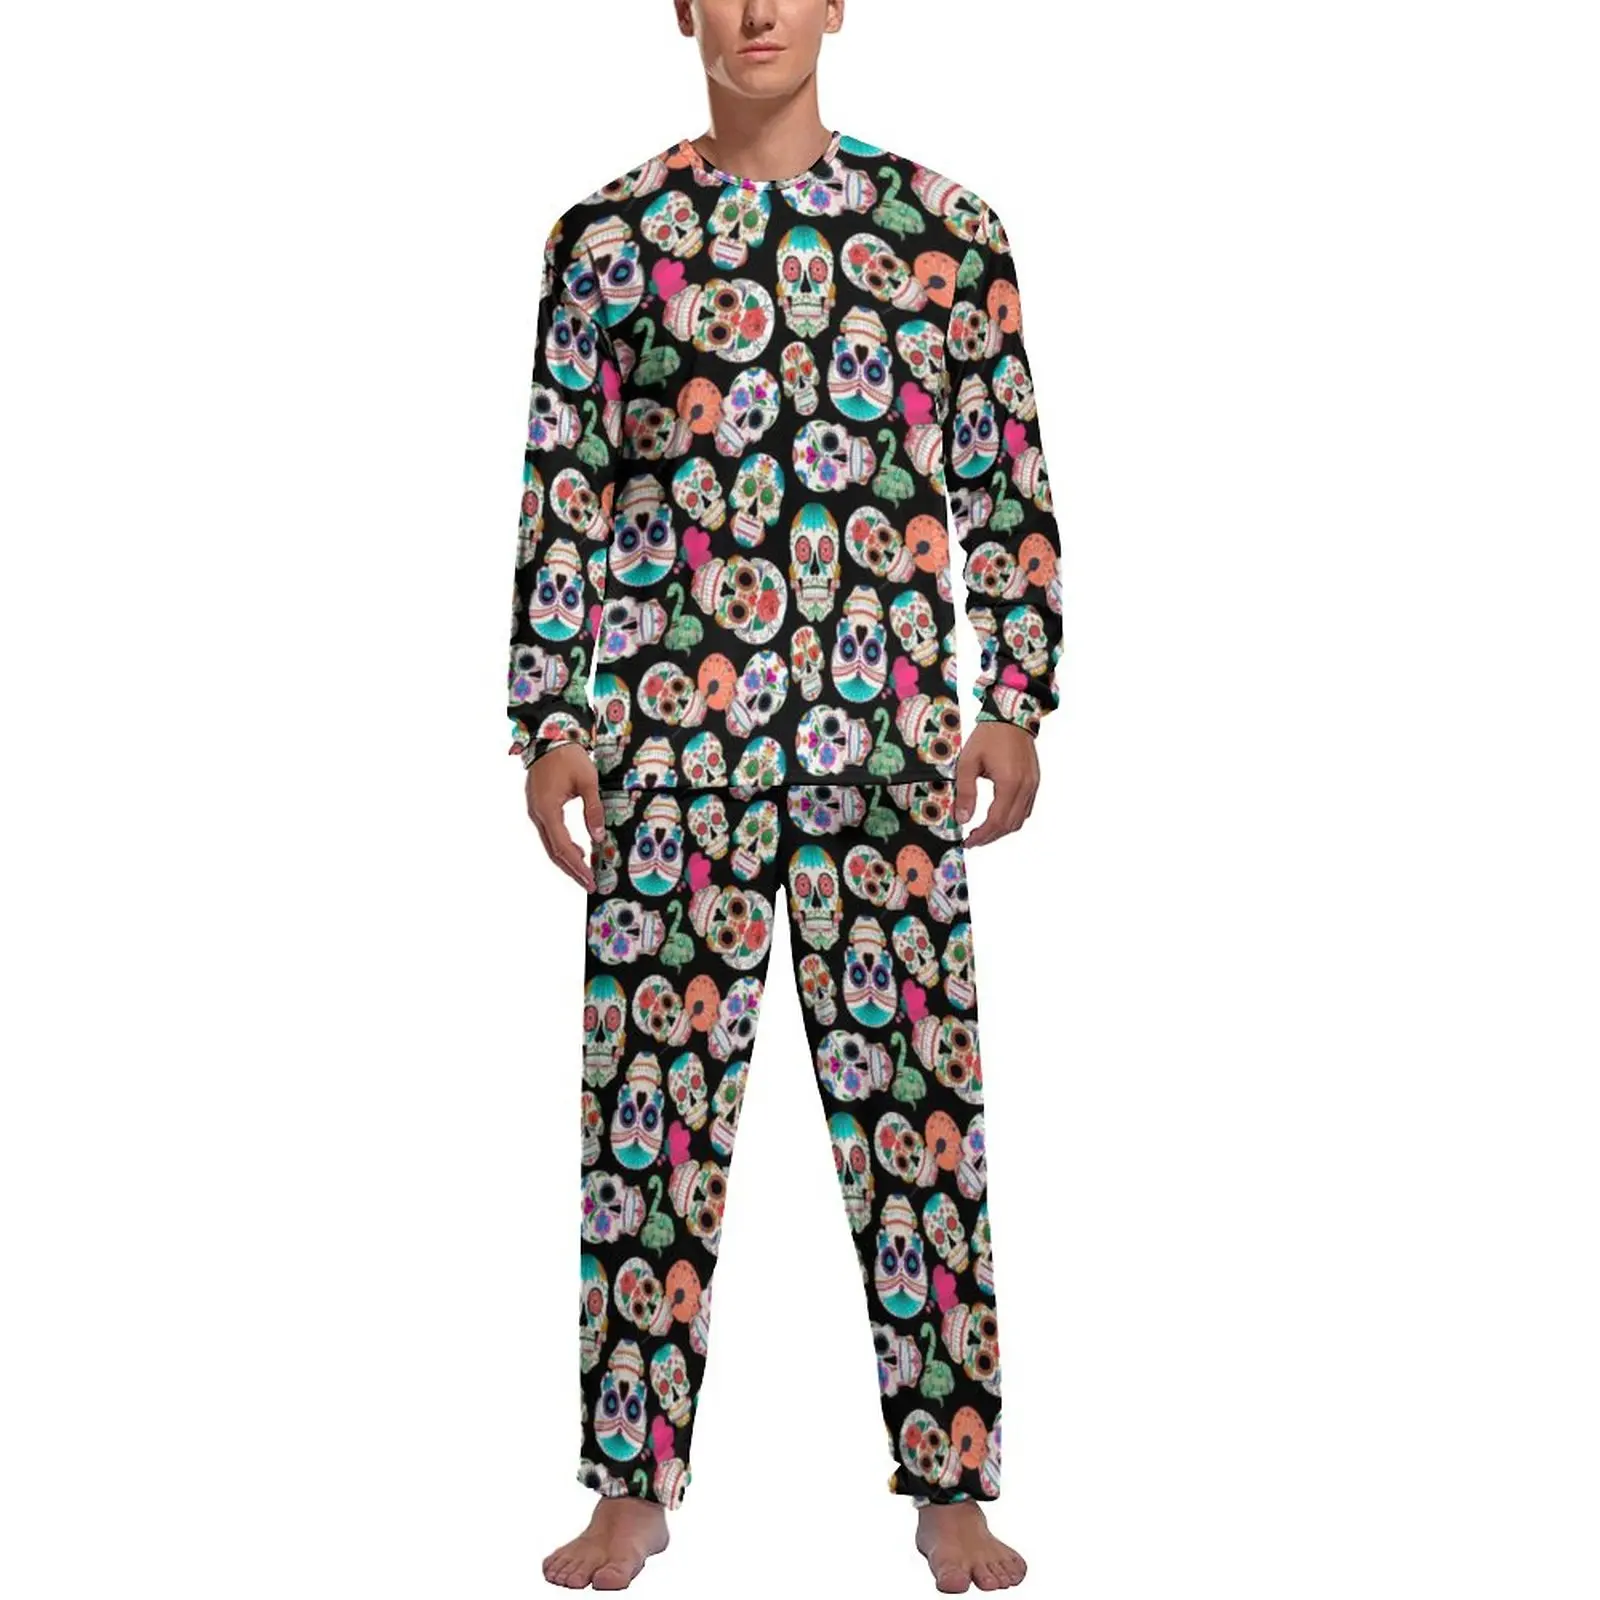 Colorful Sugar Skull Pajamas Autumn Retro Skeleton Night Nightwear Male Two Piece Design Long Sleeve Kawaii Pajama Sets